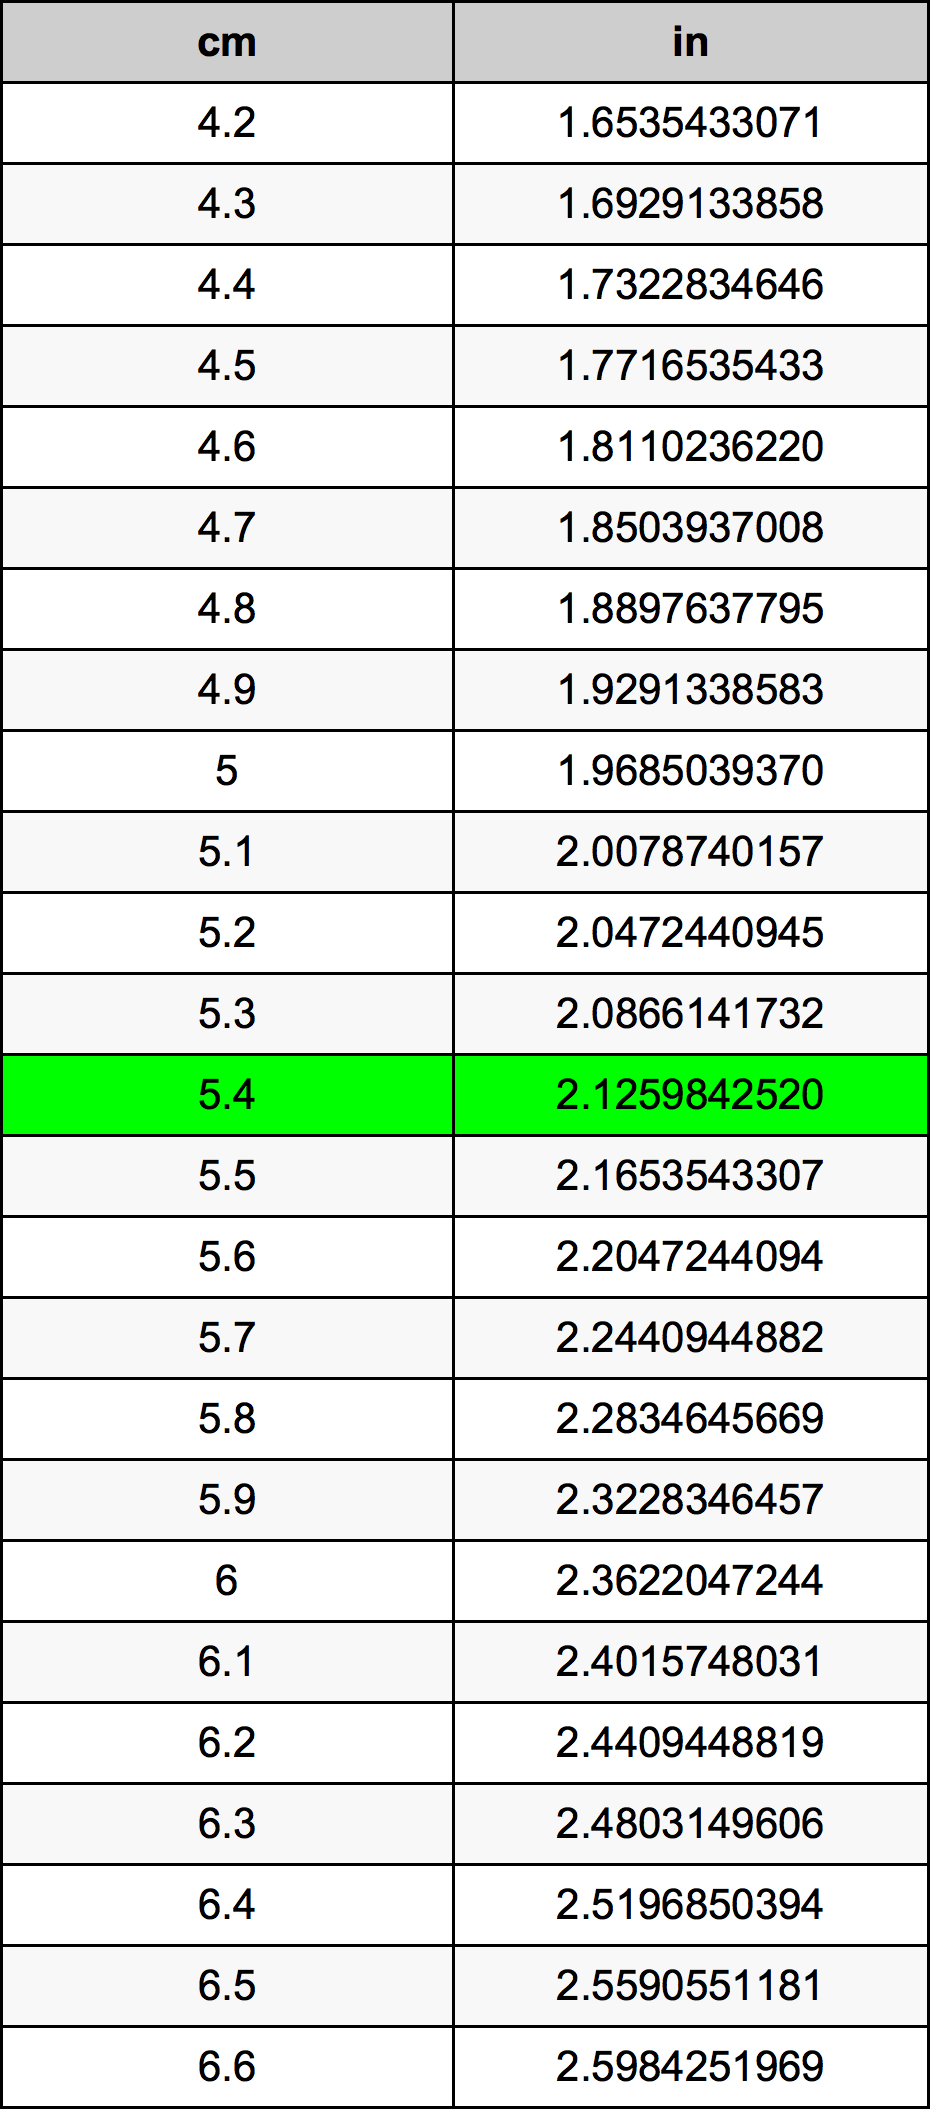 5.4 Centiméter átszámítási táblázat